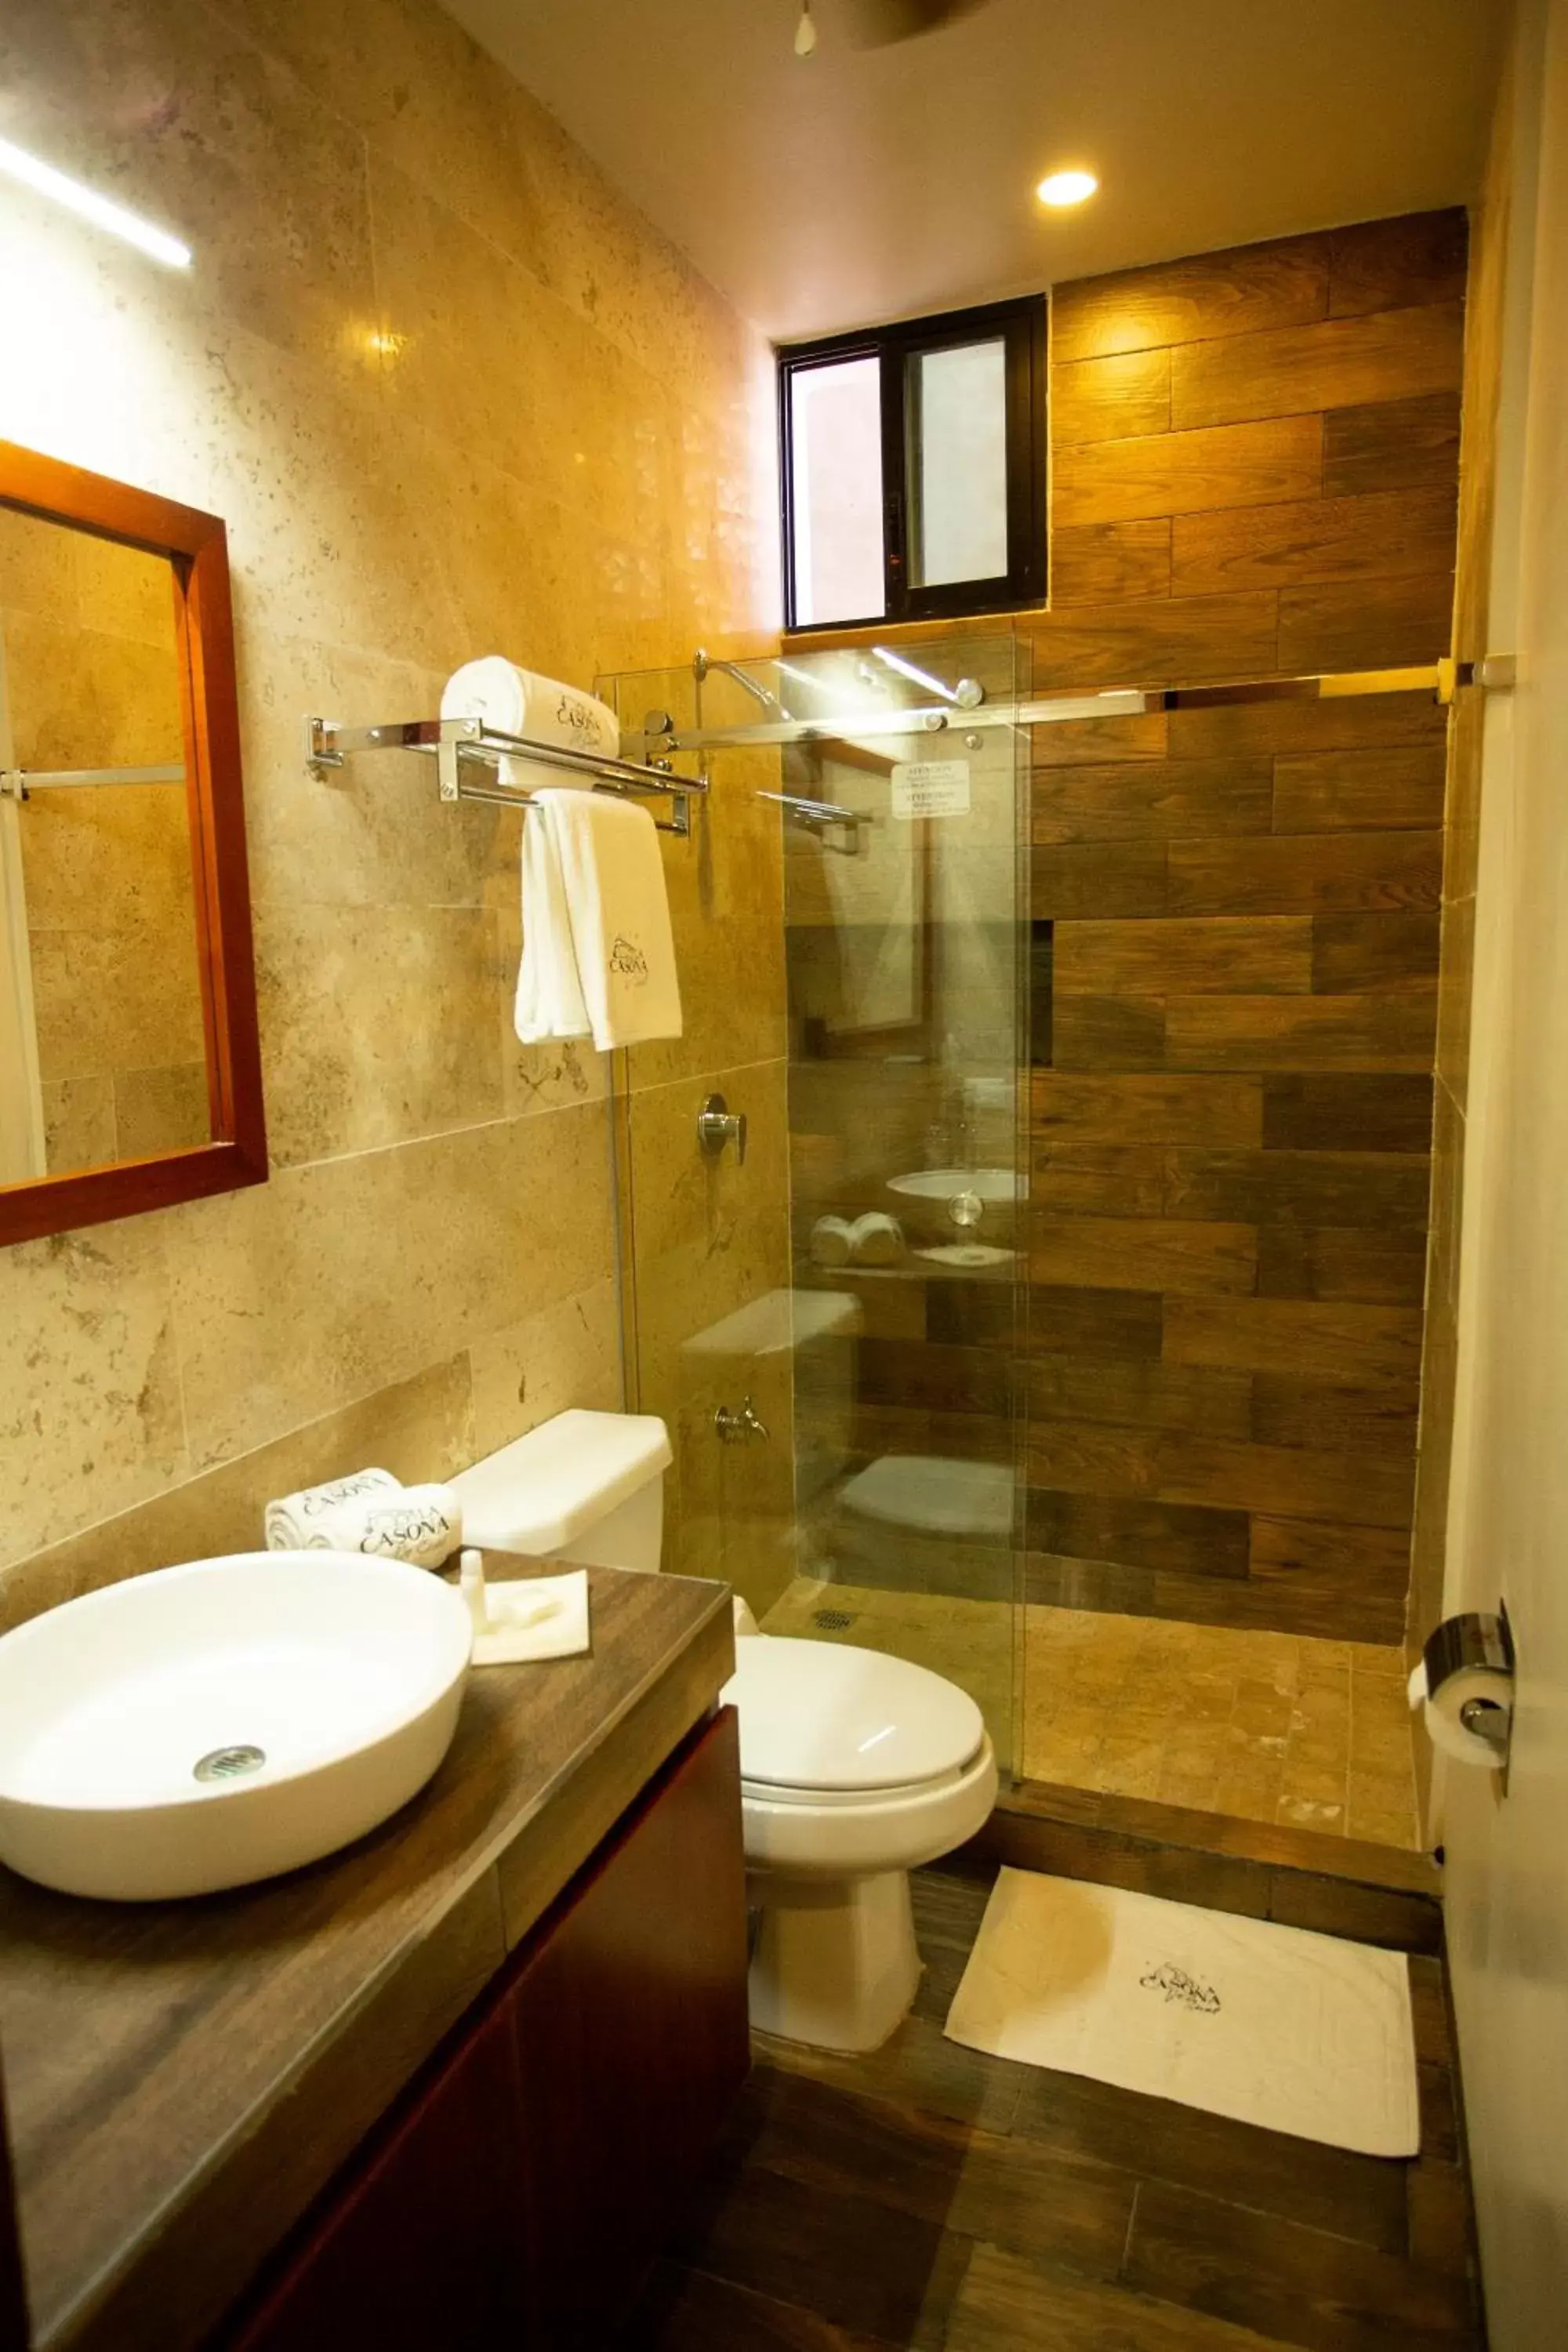 Shower, Bathroom in La Casona de Sisal Hotel